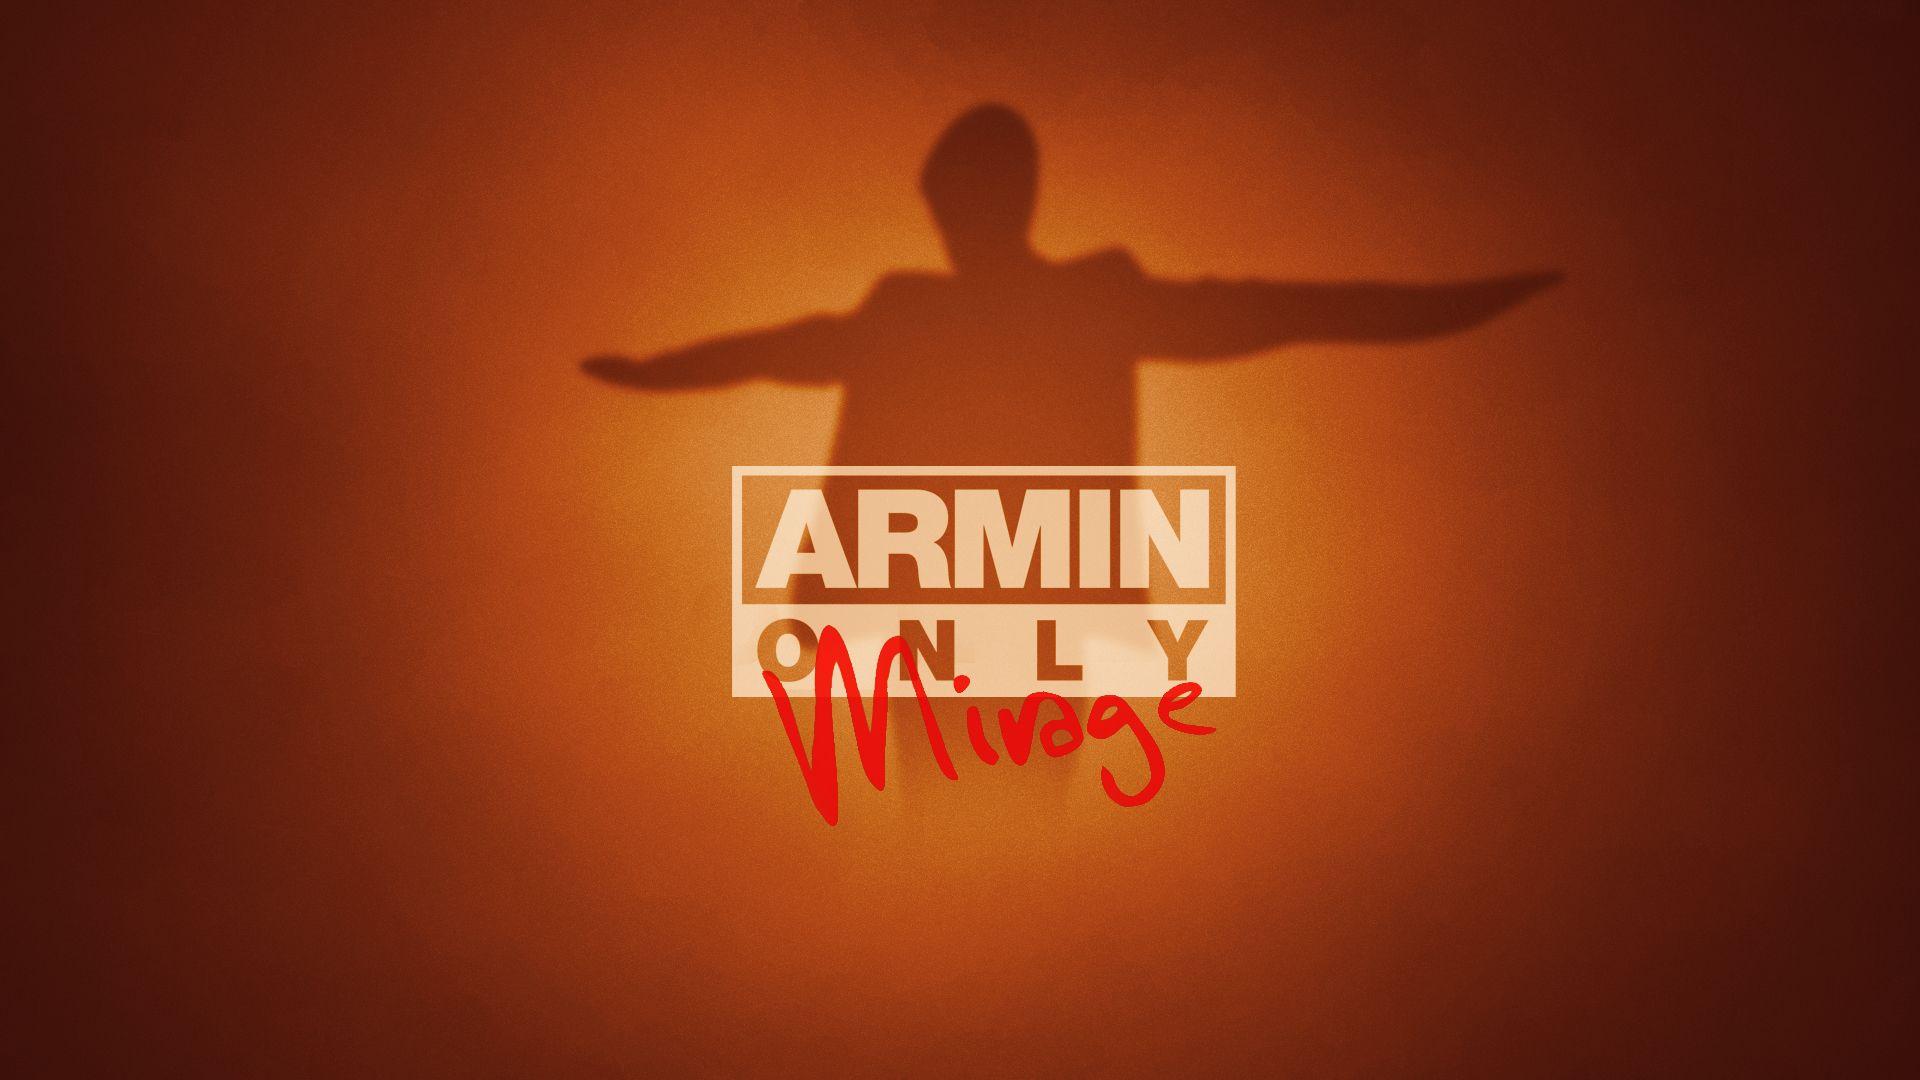 Armin Van Buuren image ARMIN HD wallpaper and background photo